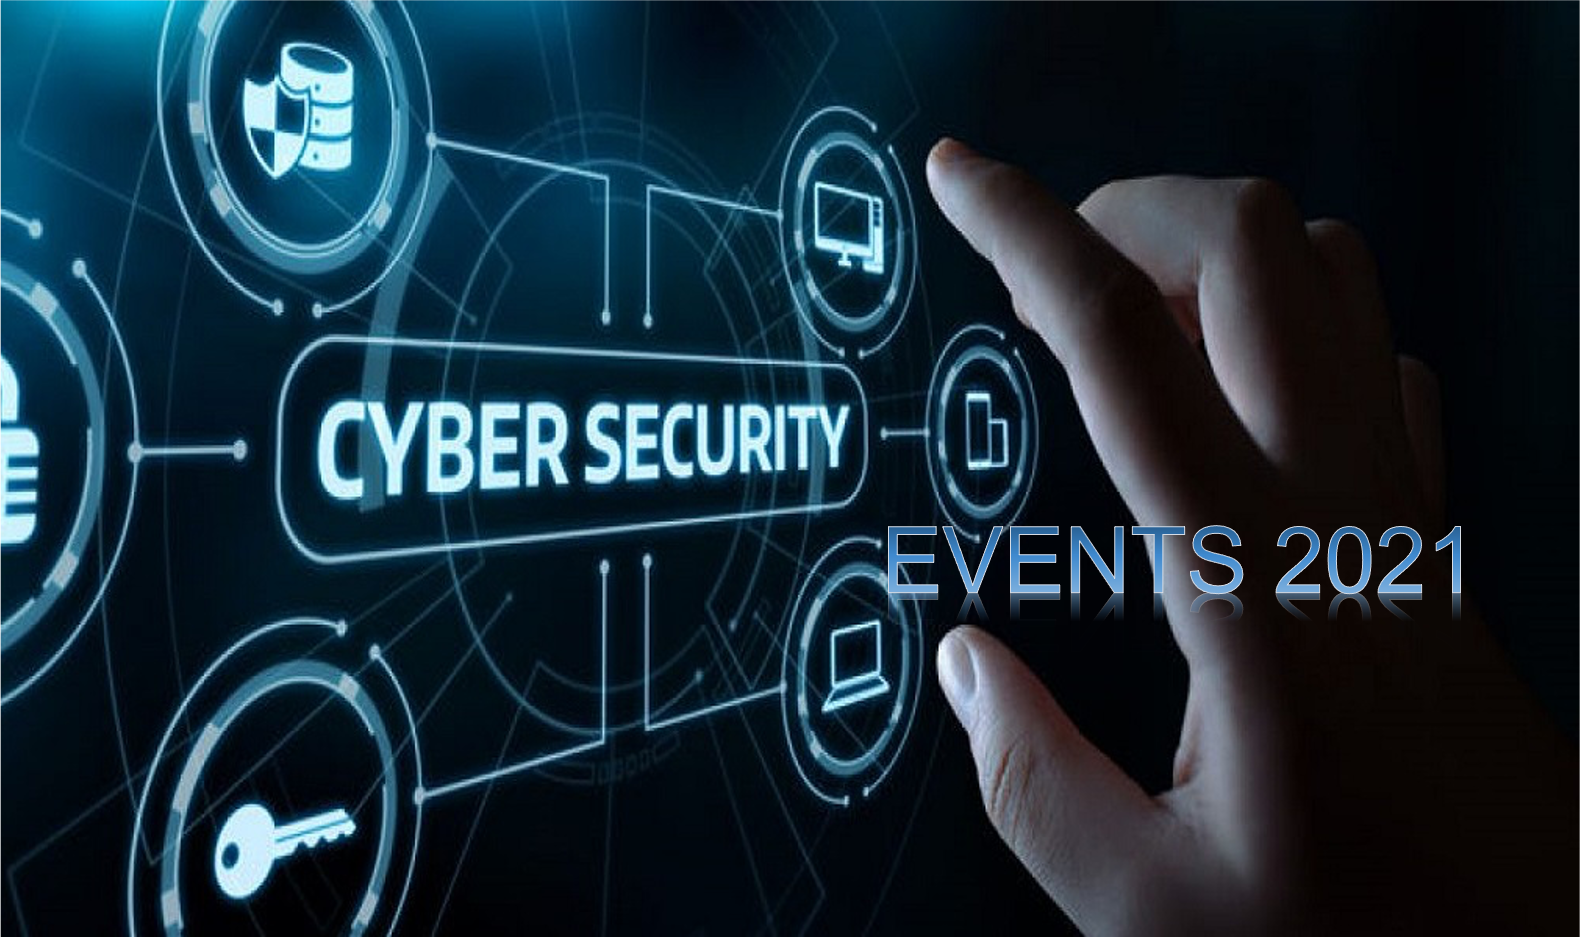 Cyber Security Events 2021 la nostra guida per seguirli tutti